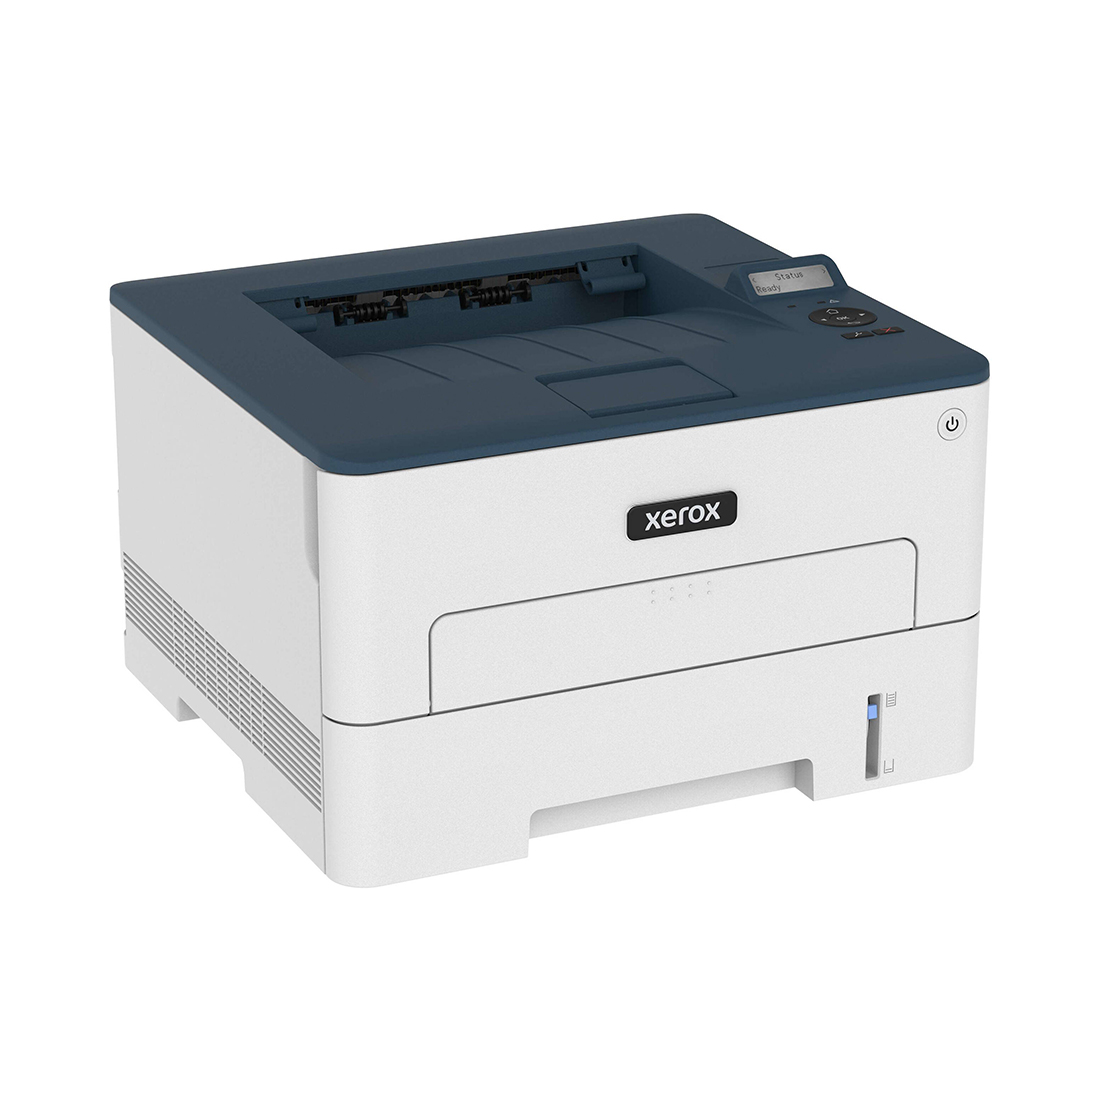 Монохромный принтер, Xerox, B230DNI, A4, Лазерный, 34 стр/мин, Нагрузка (max) 30K в месяц, 250+1 стр